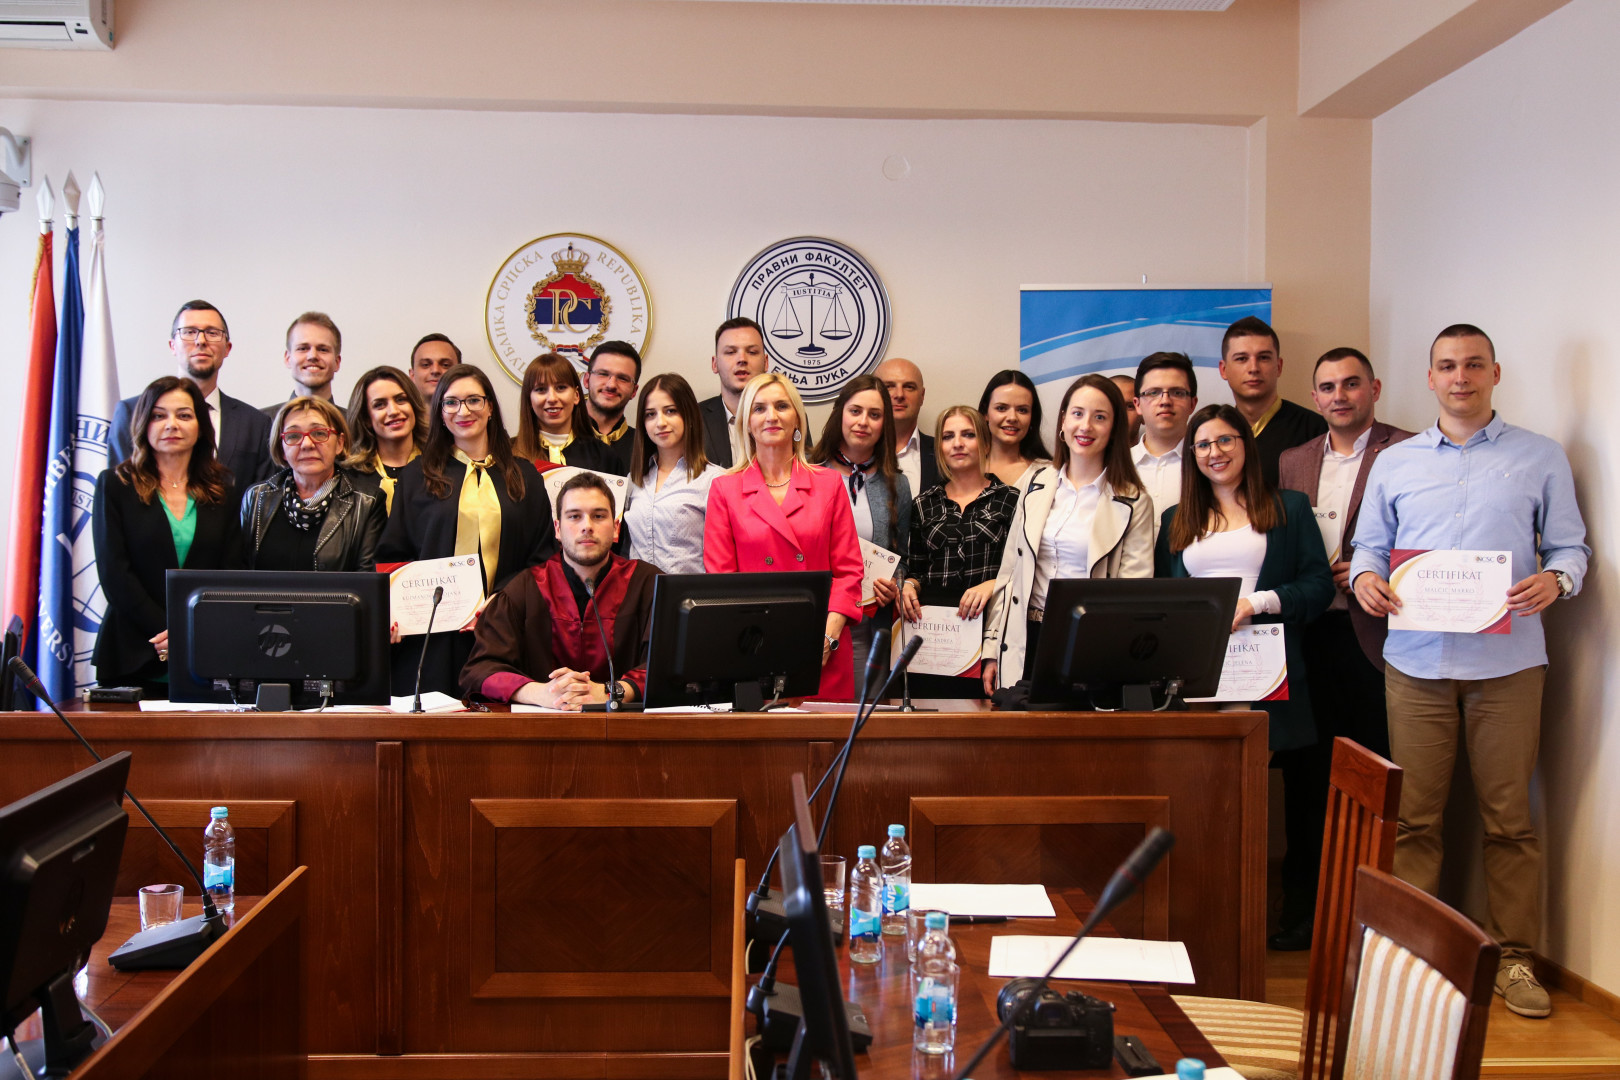 Održana završna simulacija suđenja studenata Pravnog fakulteta Univerziteta u Banja Luci